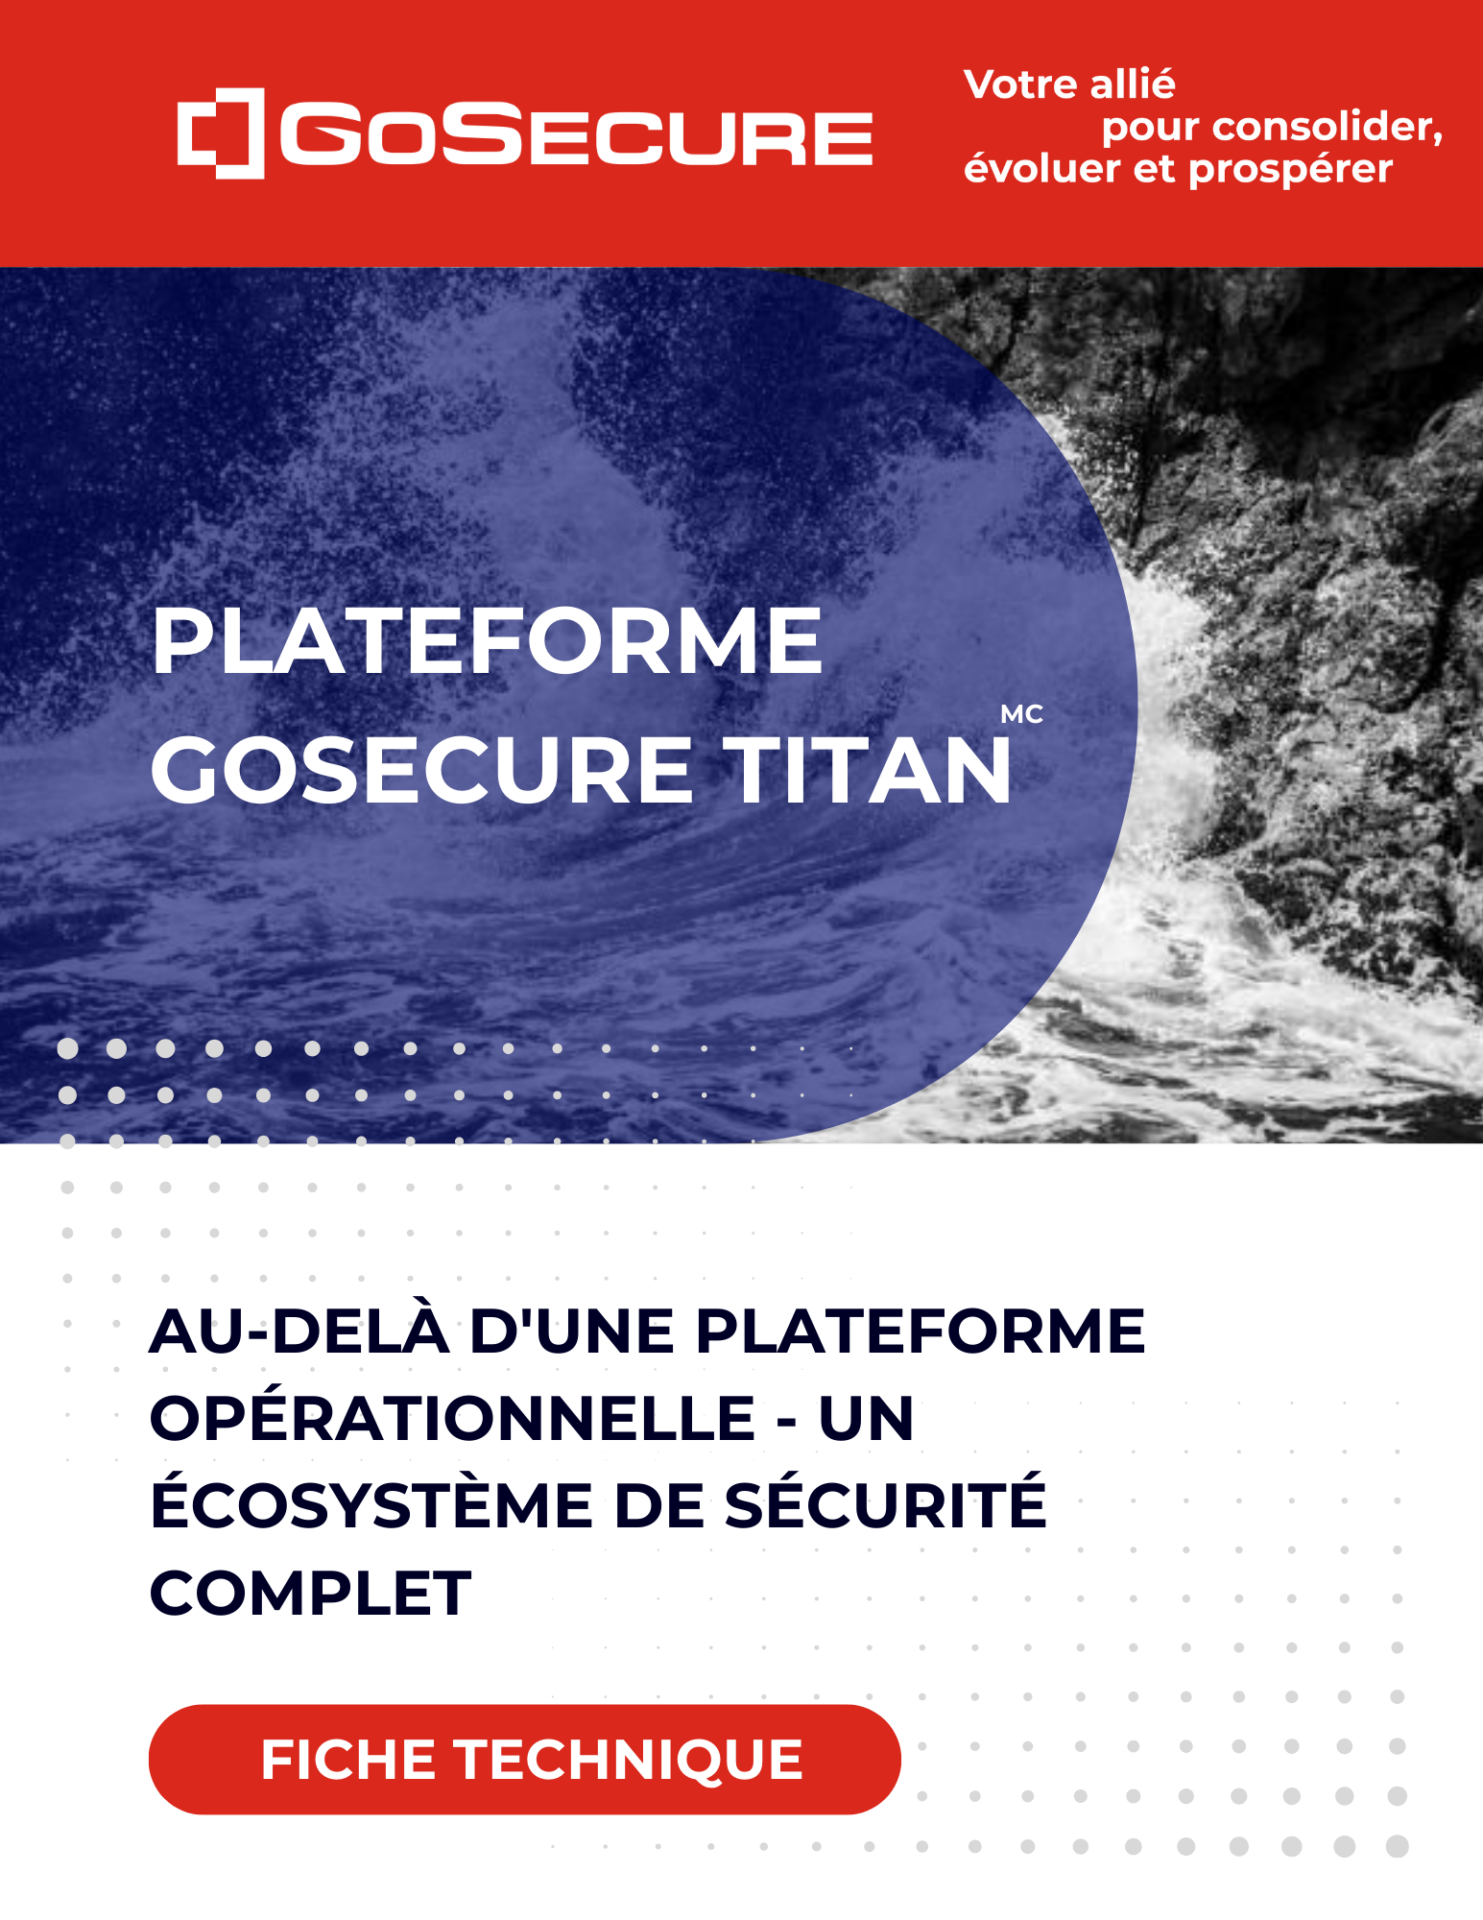 Image de couverture-Fiche technique-Plateforme GoSecure Titan